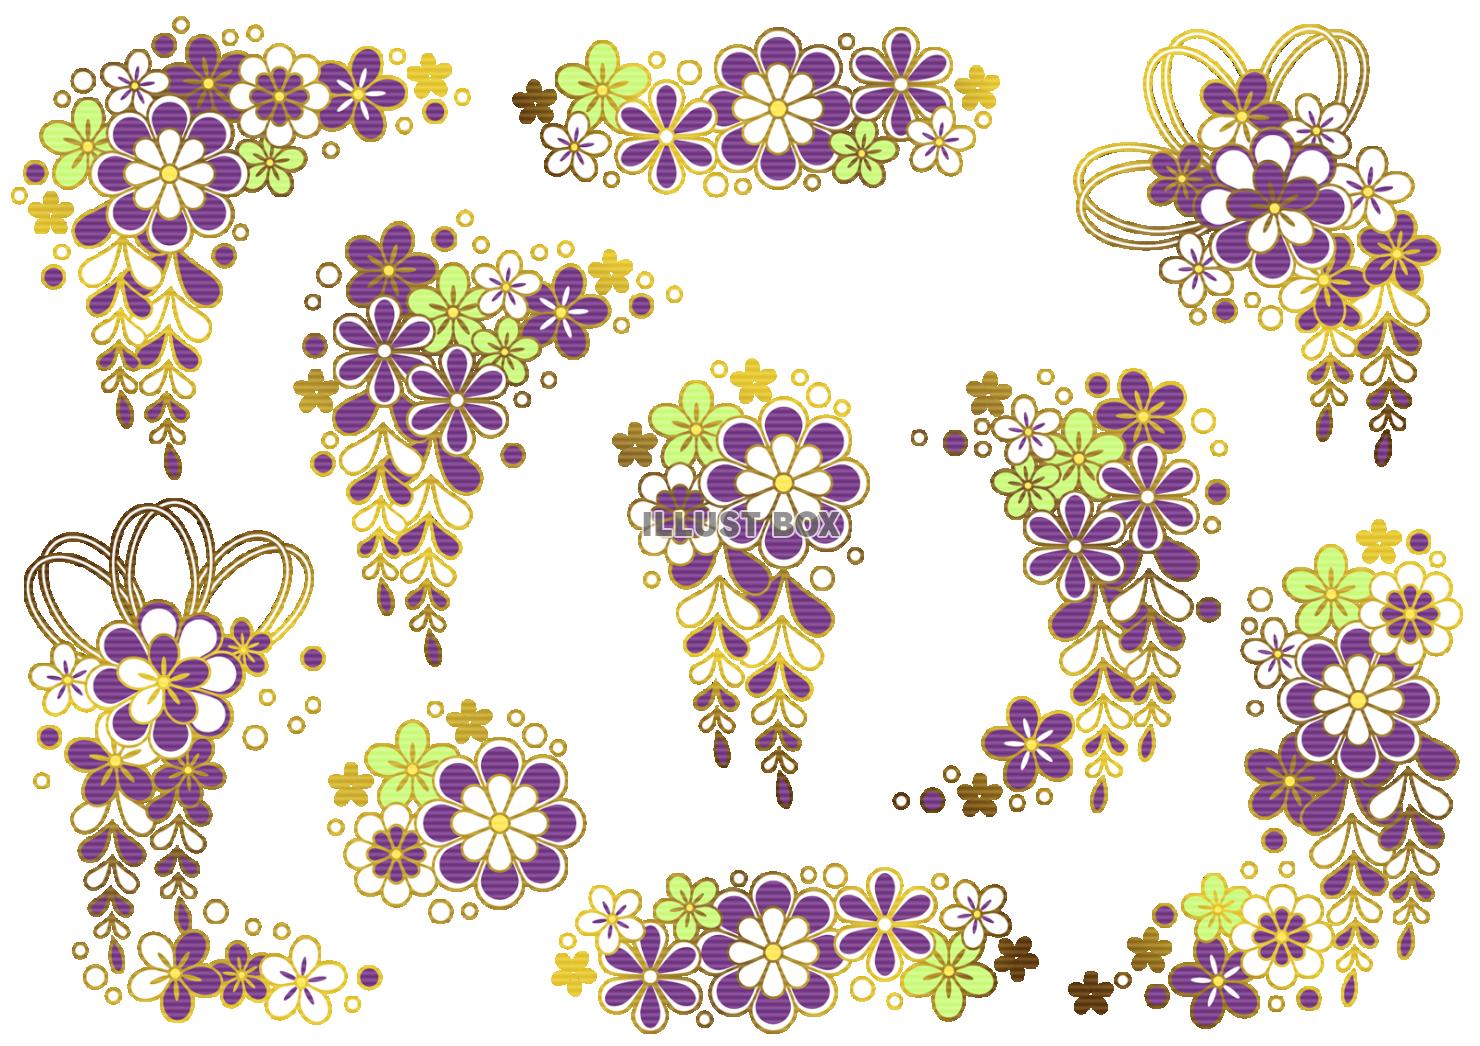 紫のかんざし風の文様花の素材集